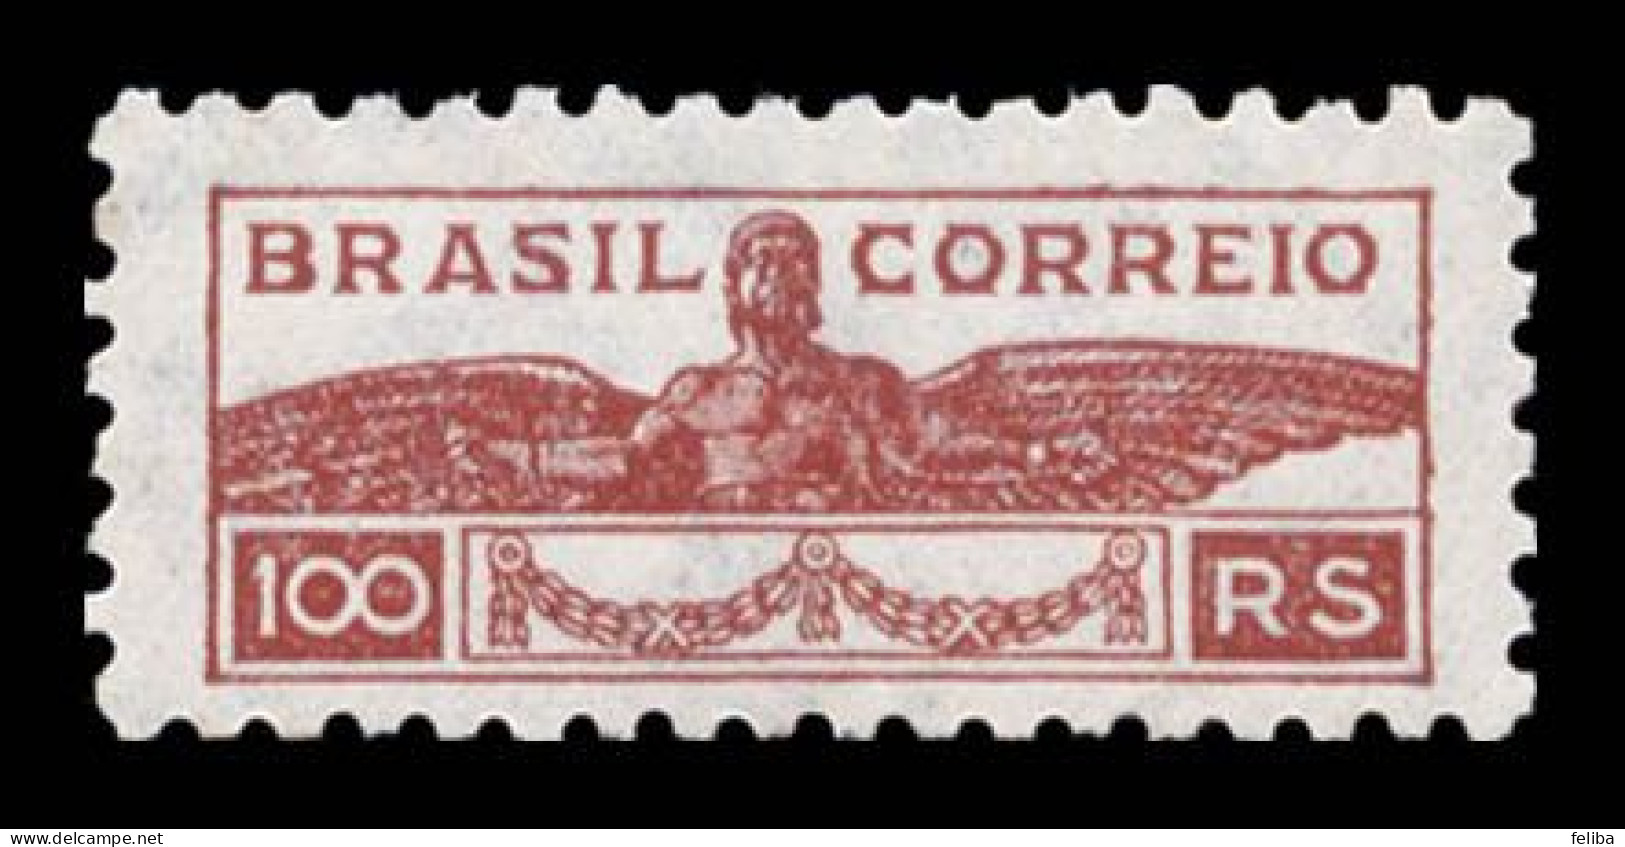 Brazil 1933 Unused - Ungebraucht